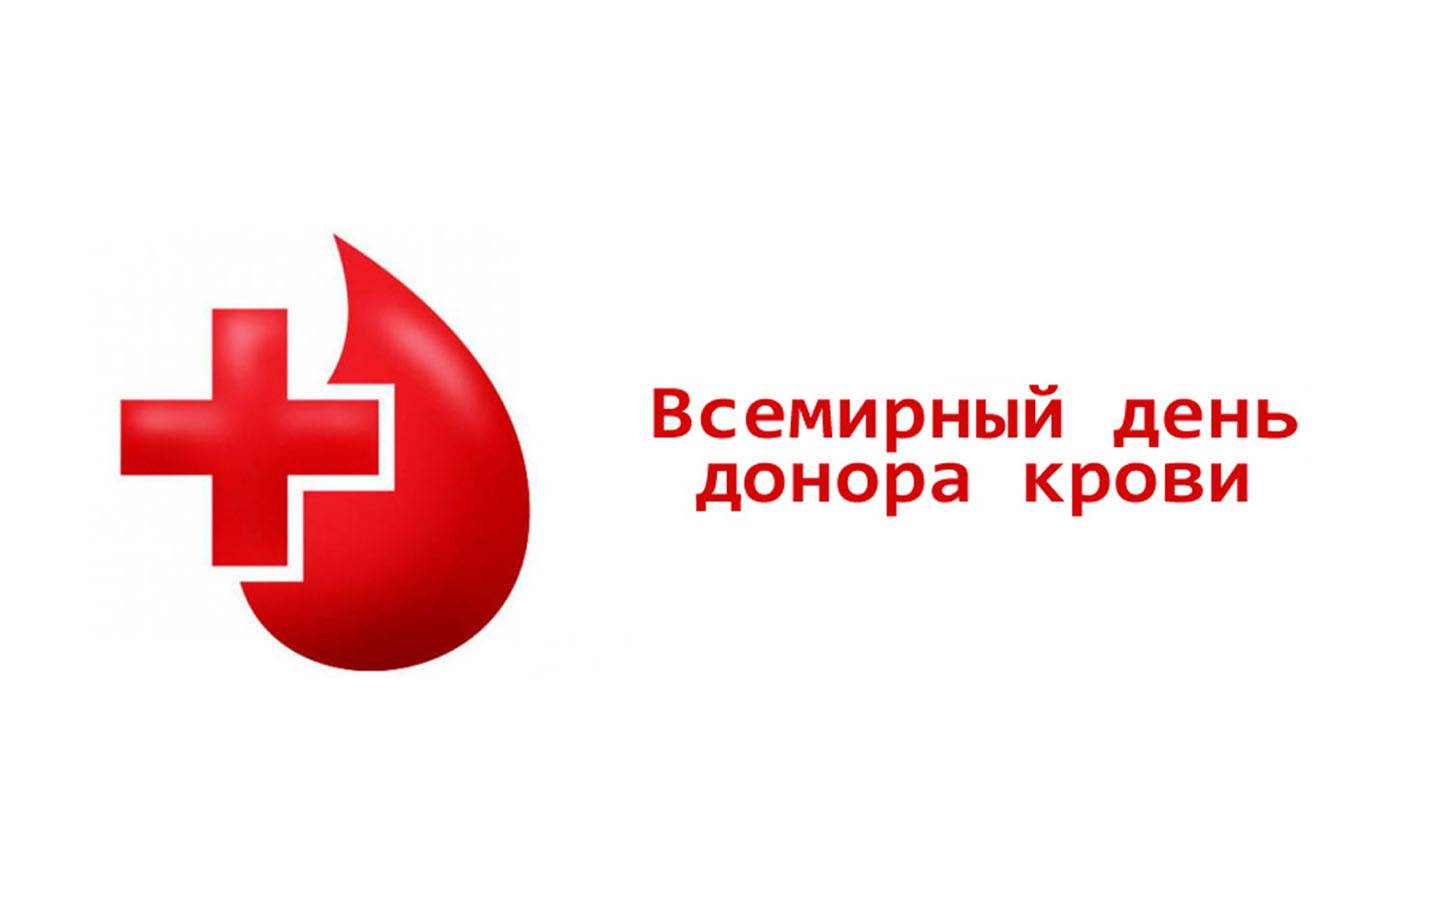 По всему миру 14 июня отмечается всемирный день донора крови